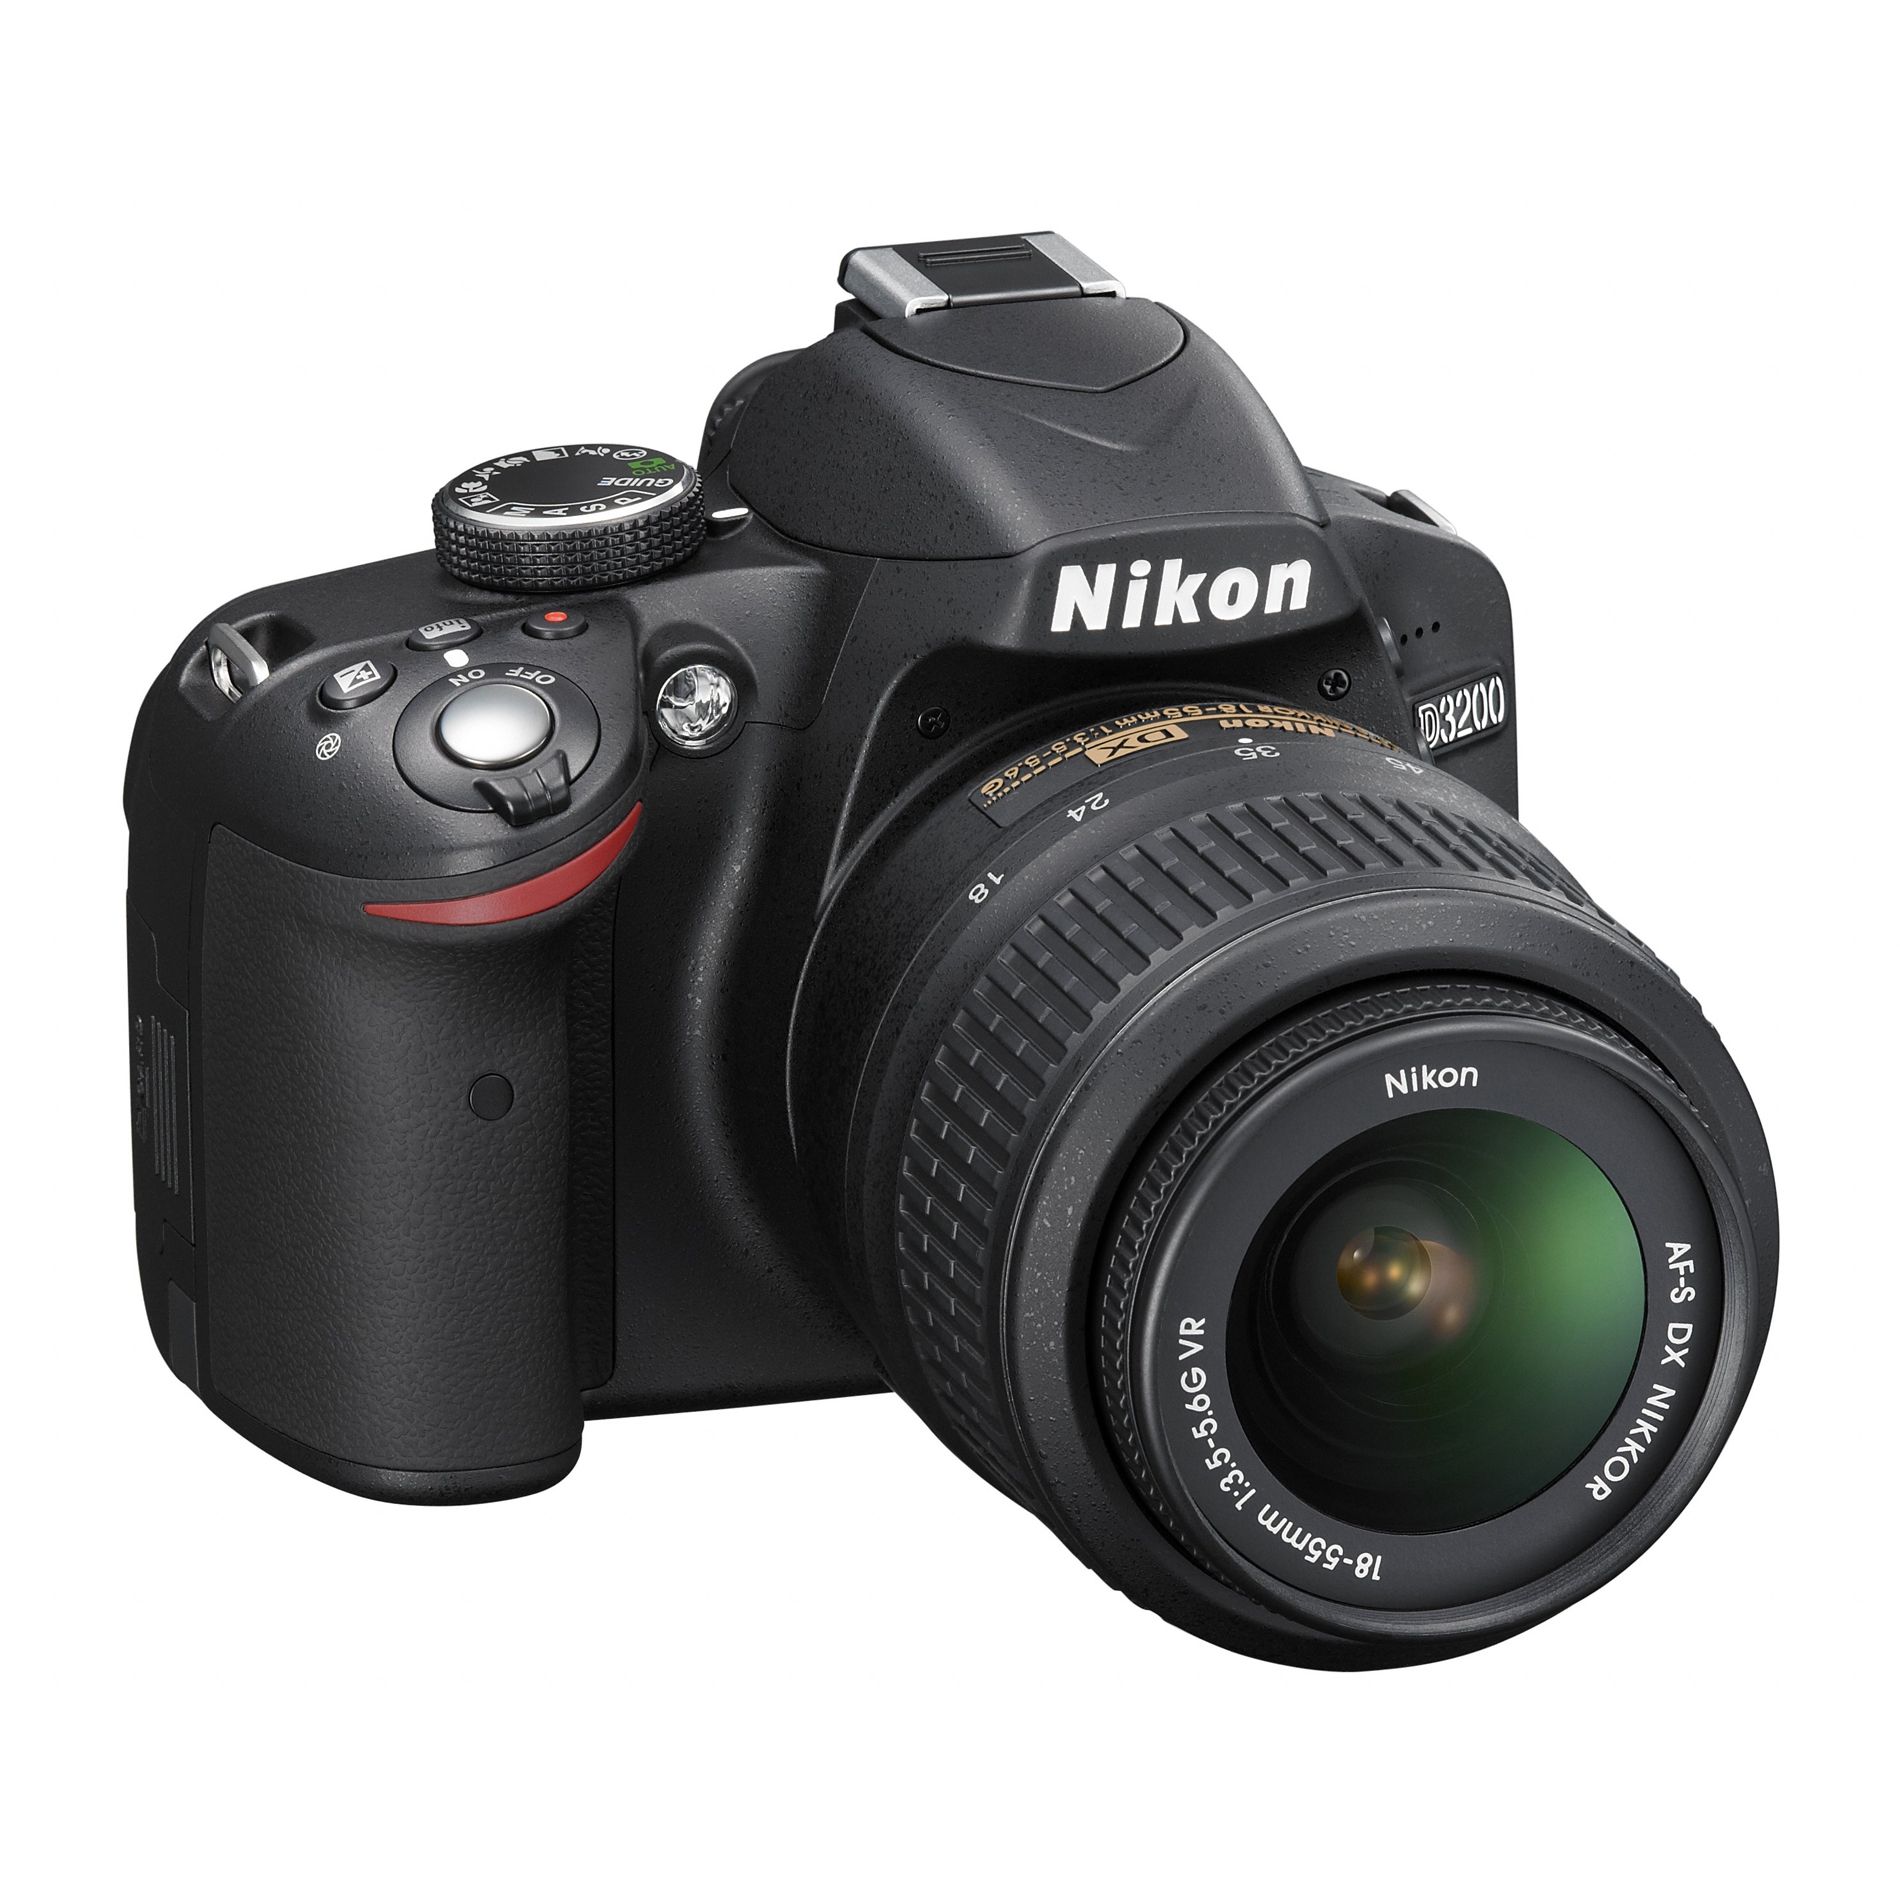 Nikon D3200 DSLR Kit - Black